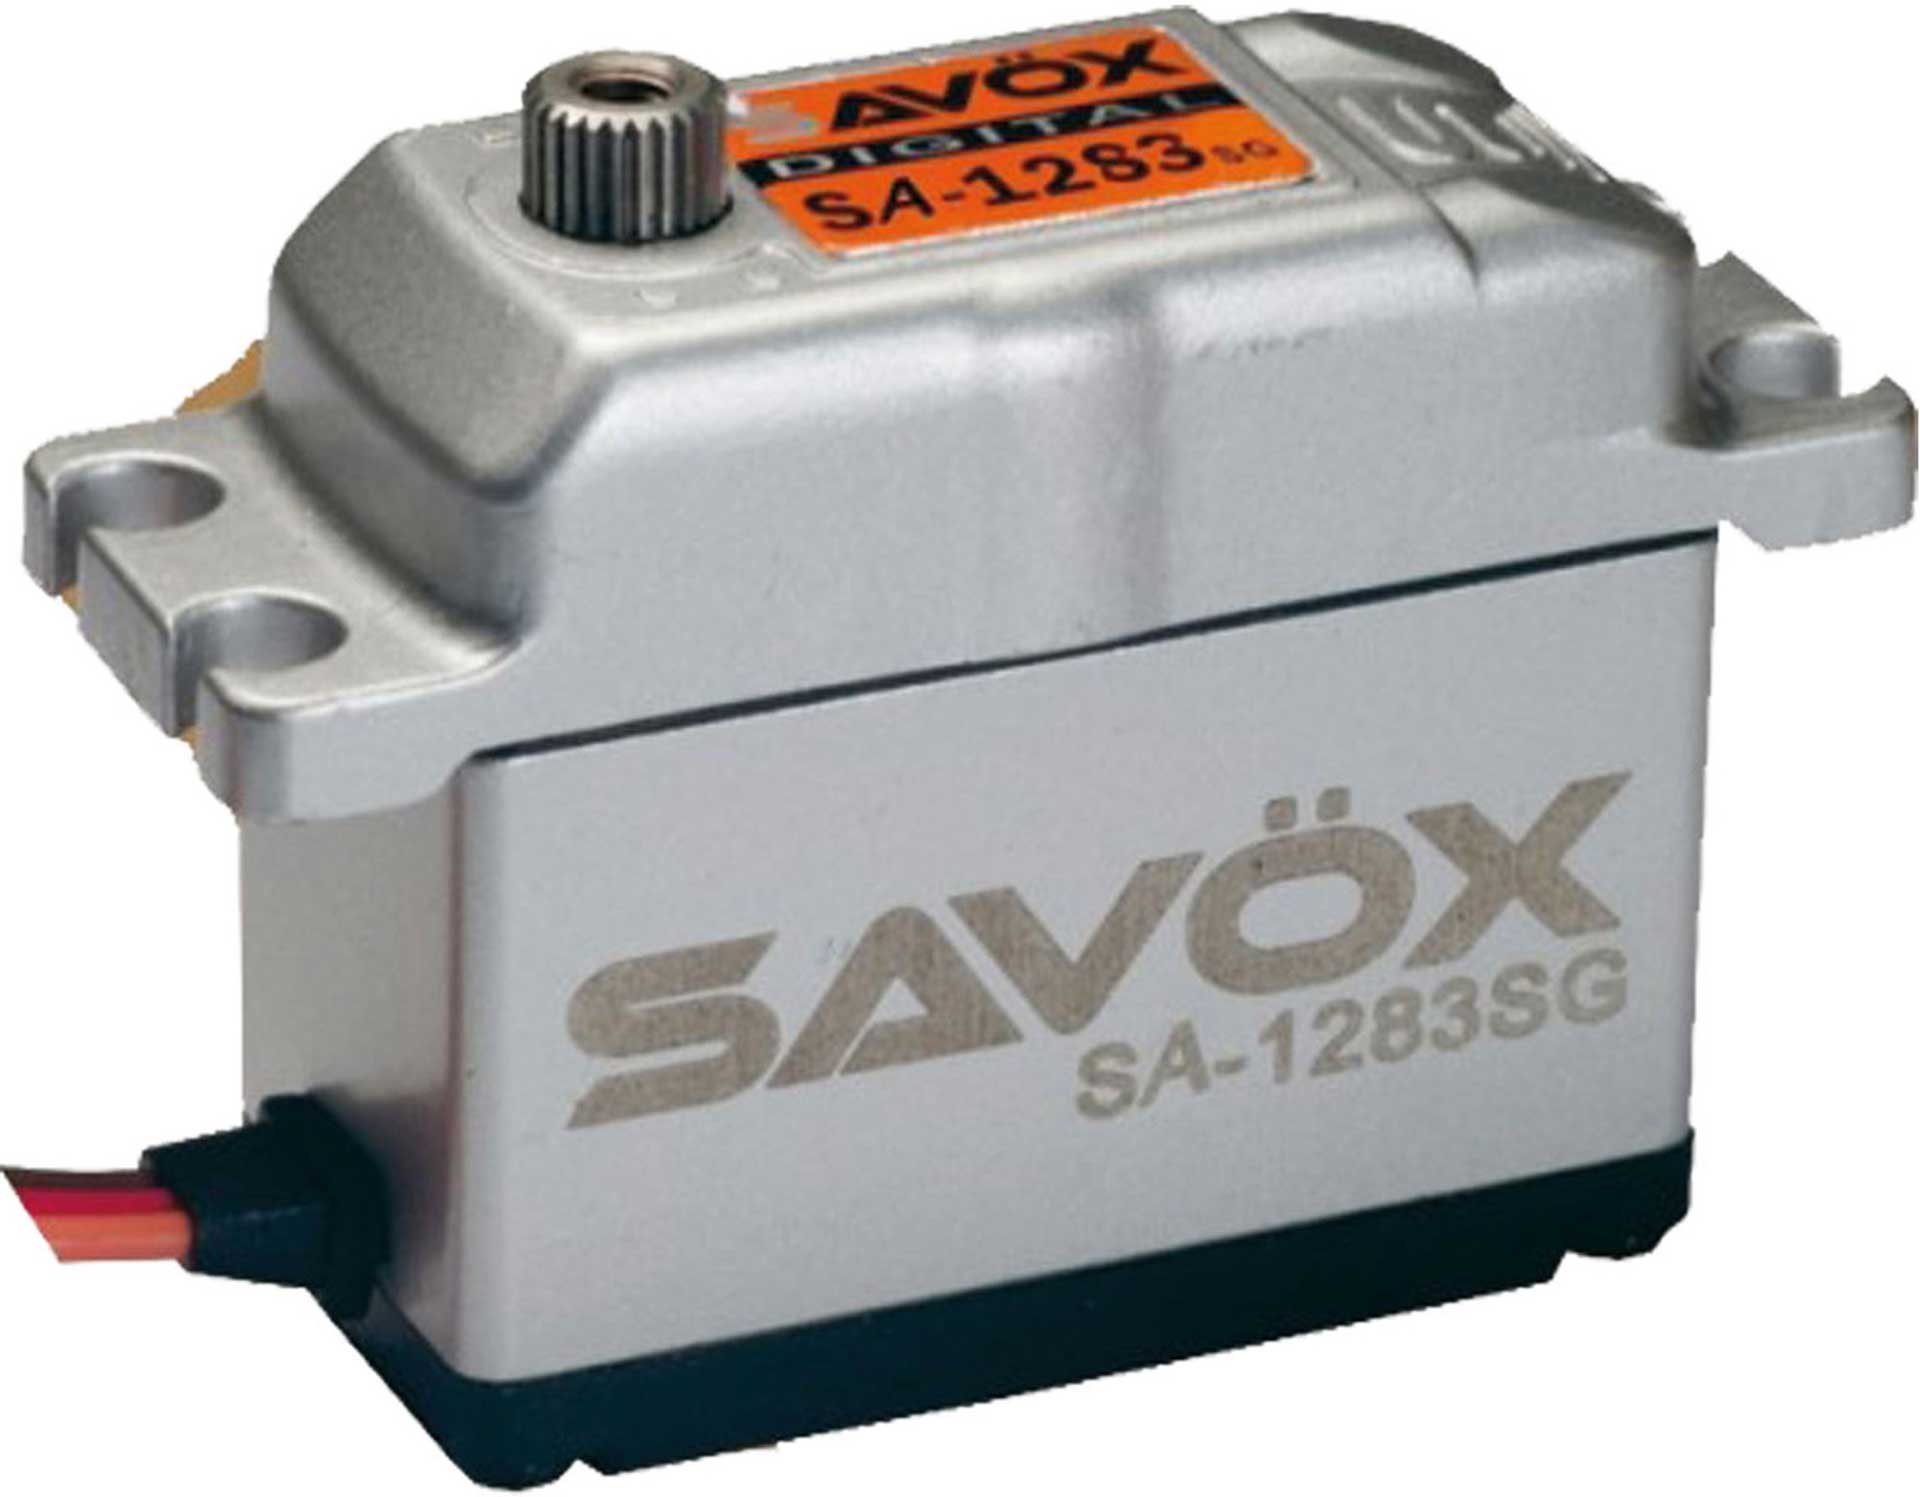 SAVÖX SA-1283SG+ (6V/30KG/0,13s) CORELESS DIGITAL SERVO